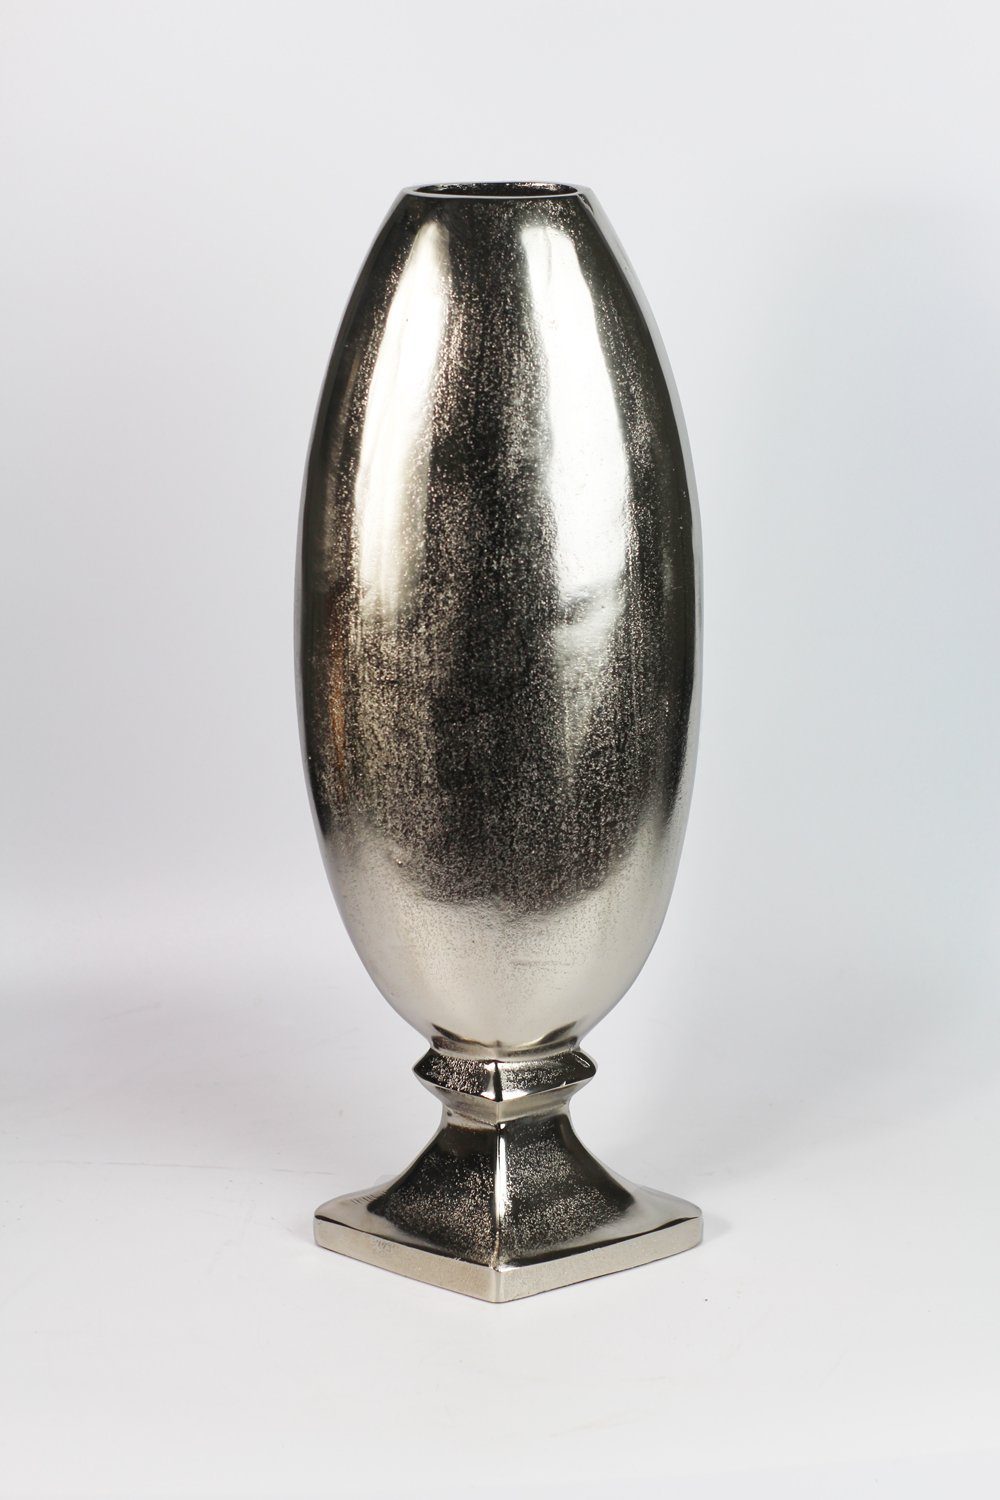 Arnusa Bodenvase edle große Metall Vase Aluminium, Edels Design Pokal Dekovase silber 70 cm | Bodenvasen